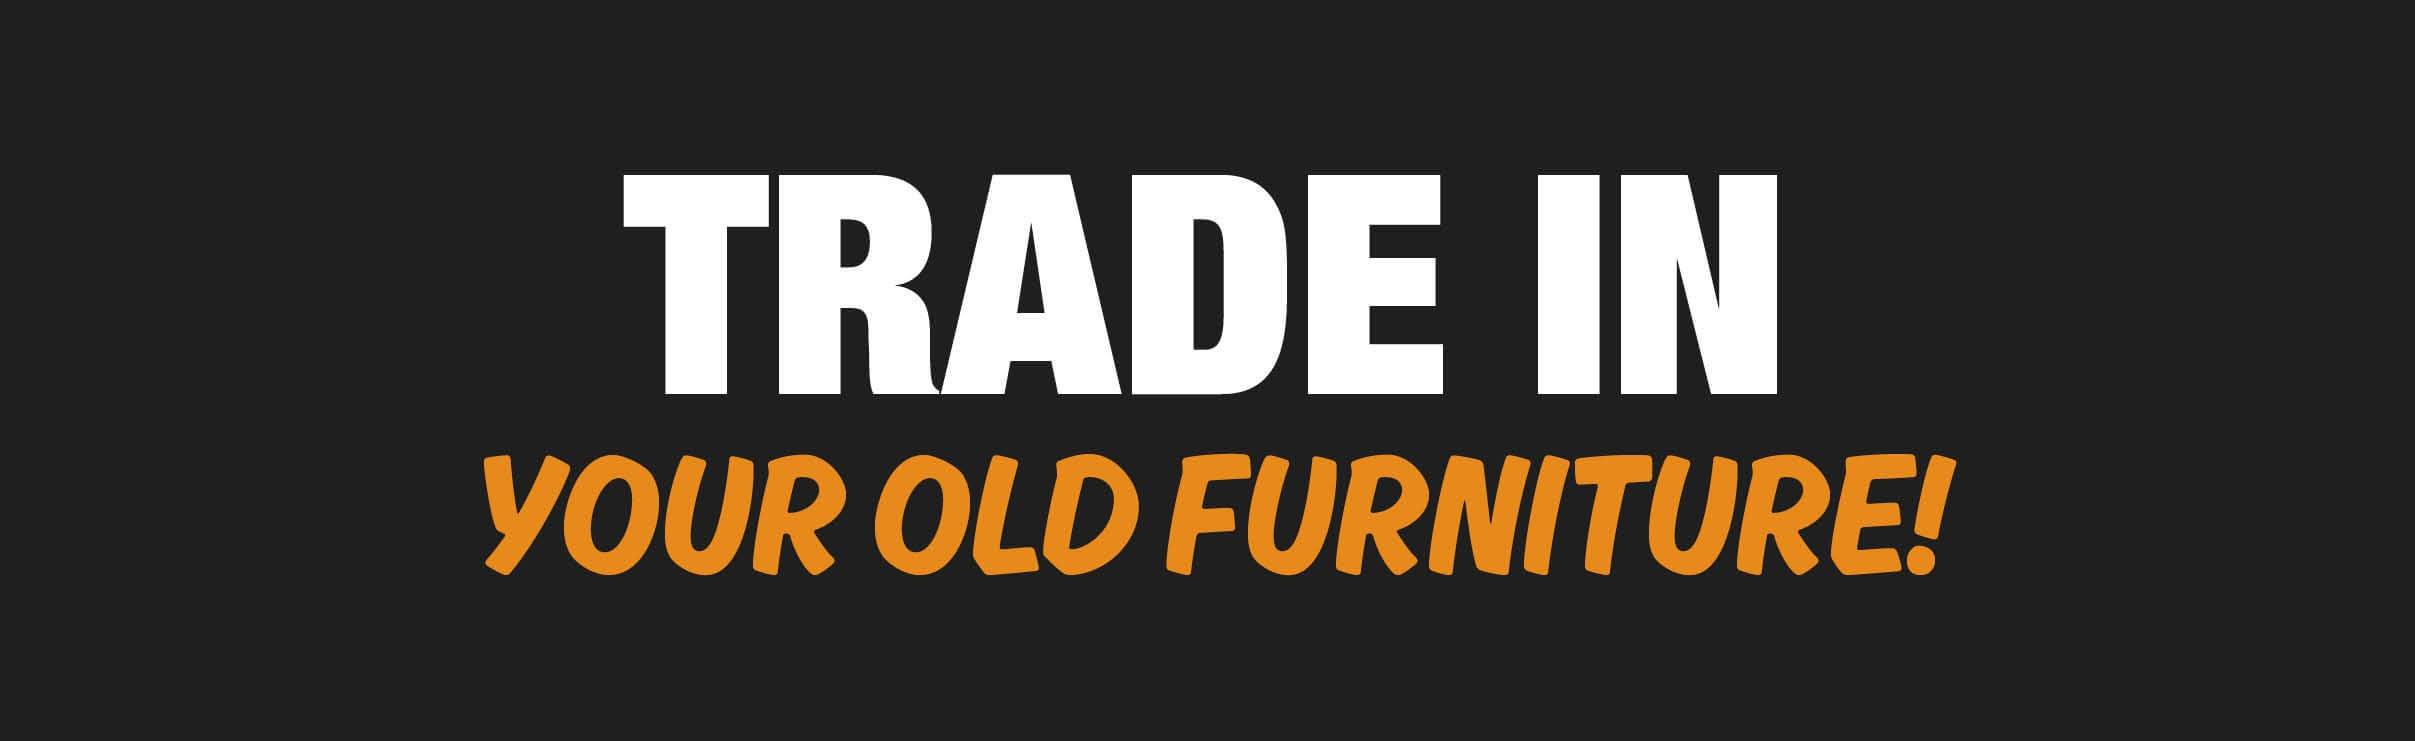 Trade in Furniture